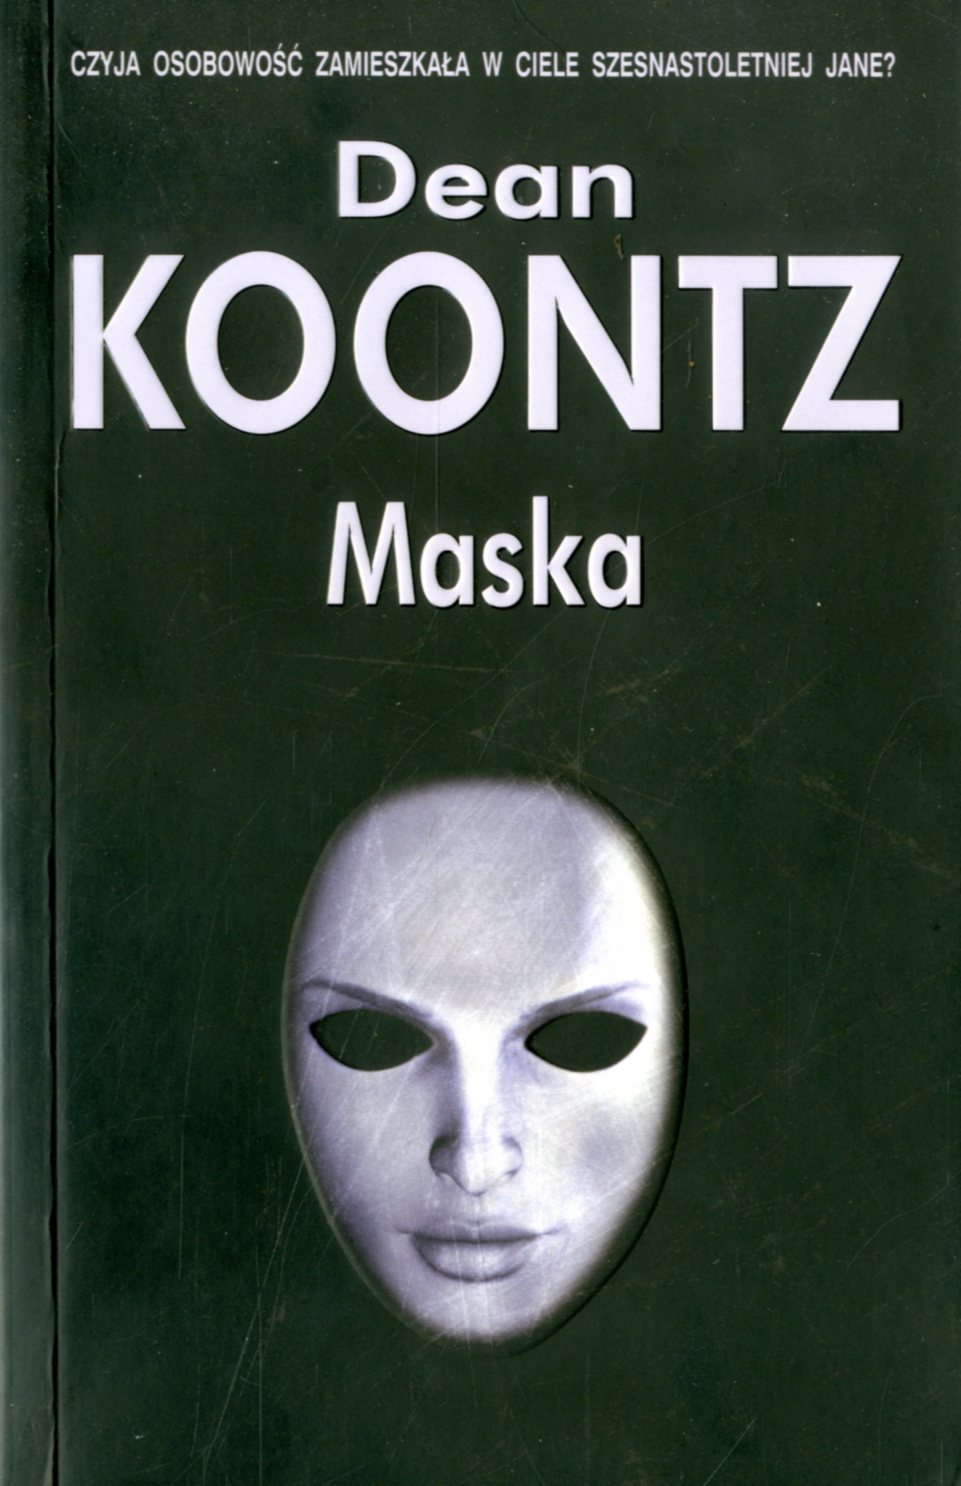 Книга без маски. Книга с маской на обложке.